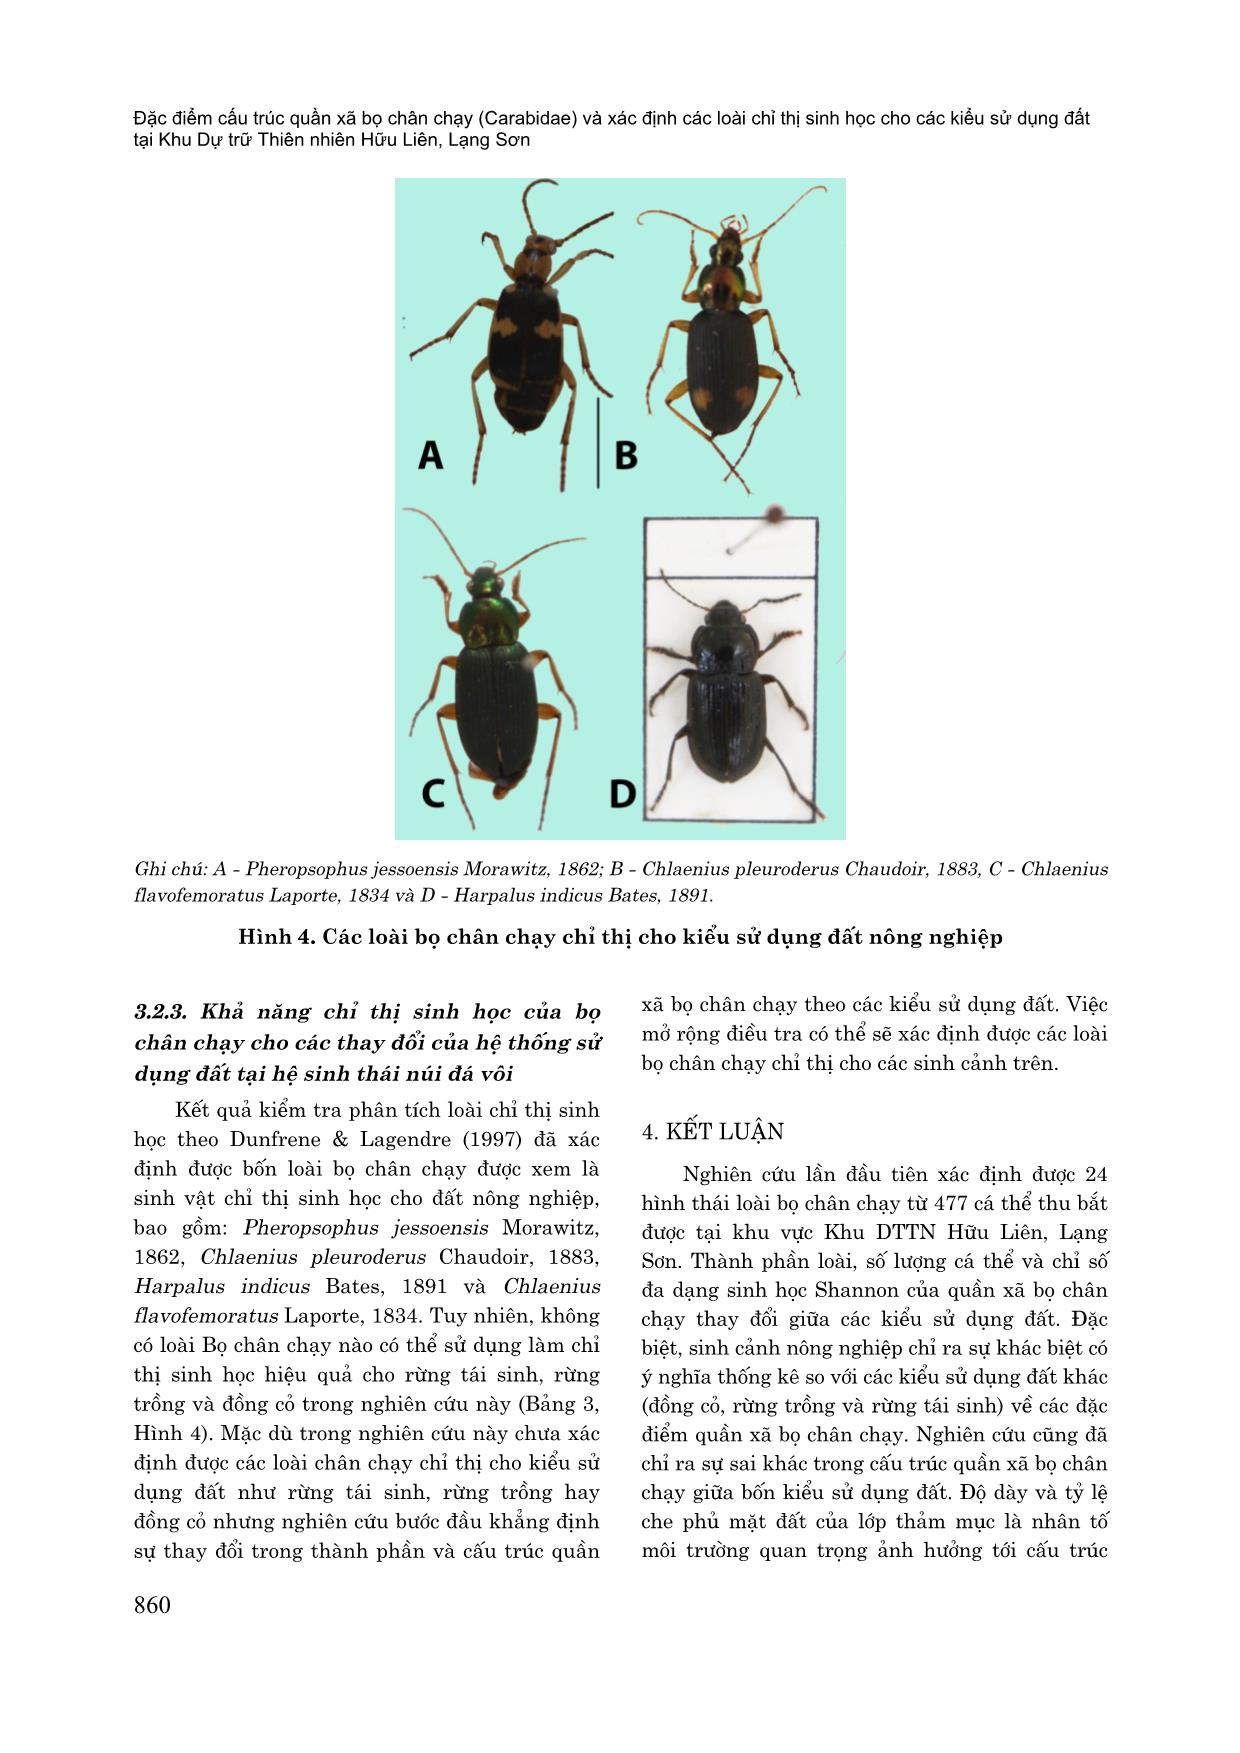 Đặc điểm cấu trúc quần xã bọ chân chạy (Carabidae) và xác định các loài chỉ thị sinh học cho các kiểu sử dụng đất tại khu dự trữ thiên nhiên Hữu Liên, Lạng Sơn trang 8